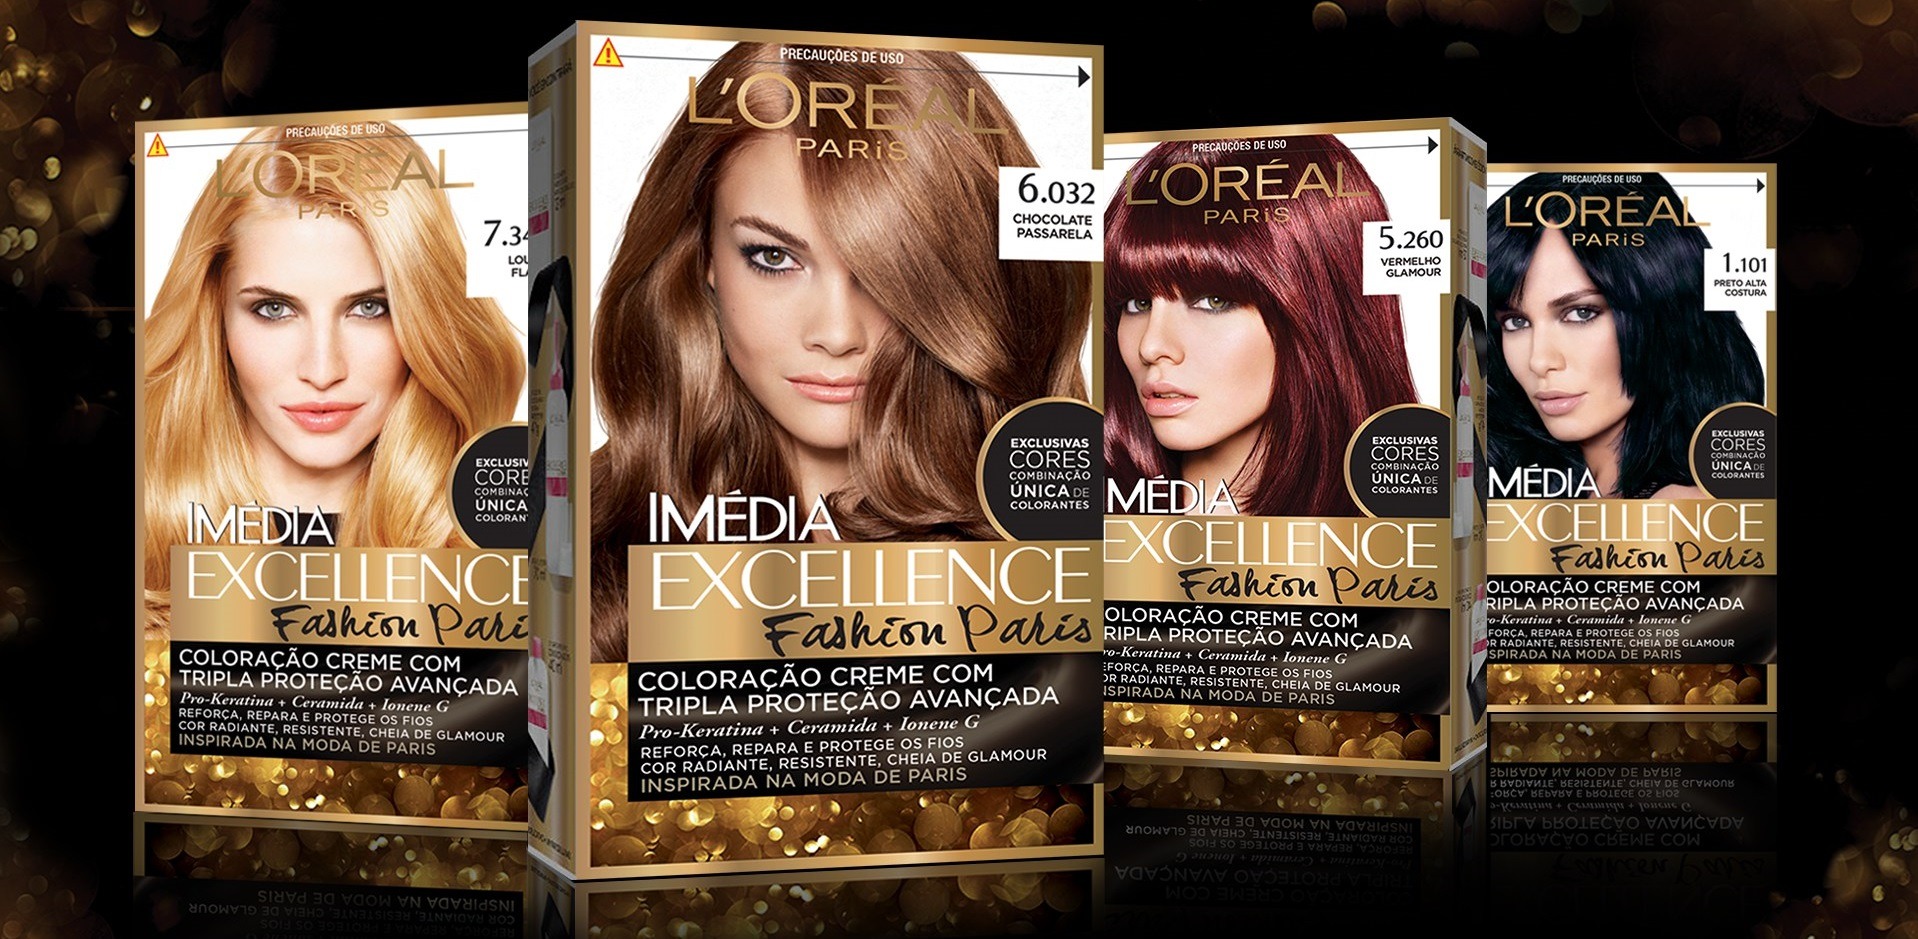 کیت رنگ مو لورآل مدل Excellence شماره 6.30